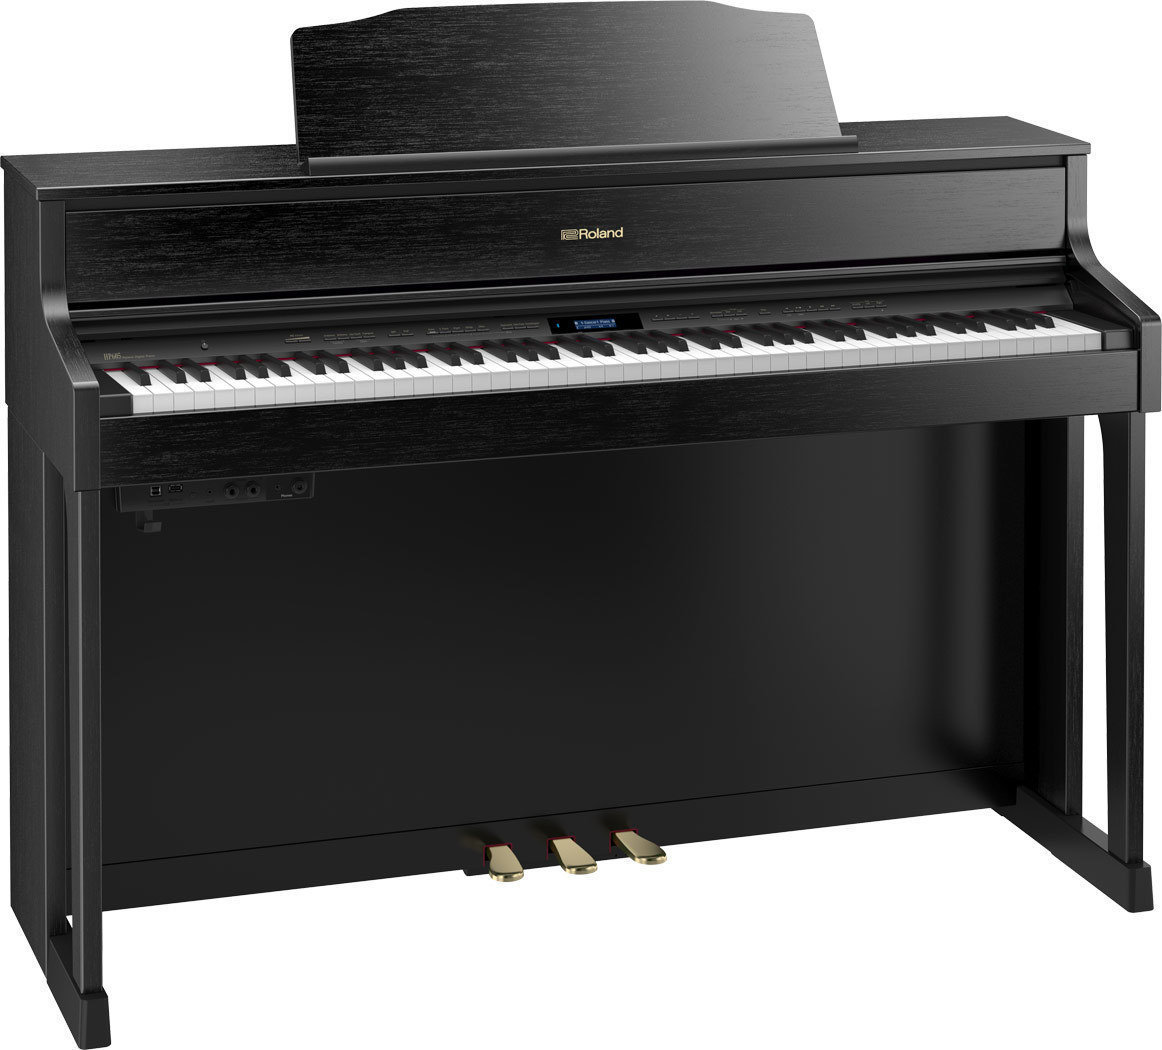 Ψηφιακό Πιάνο Roland HP-605 CB